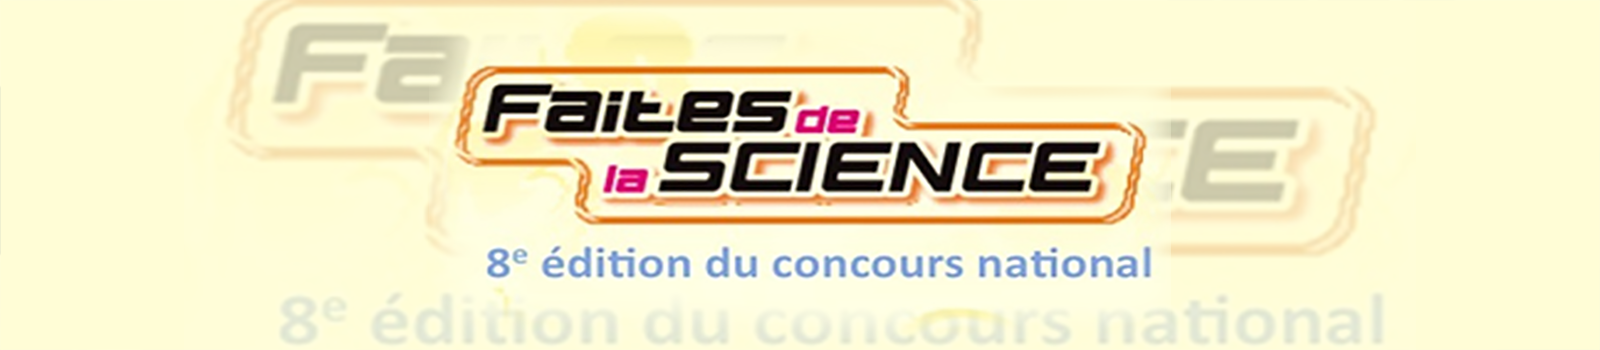 Concours national Faites de la Science 2013